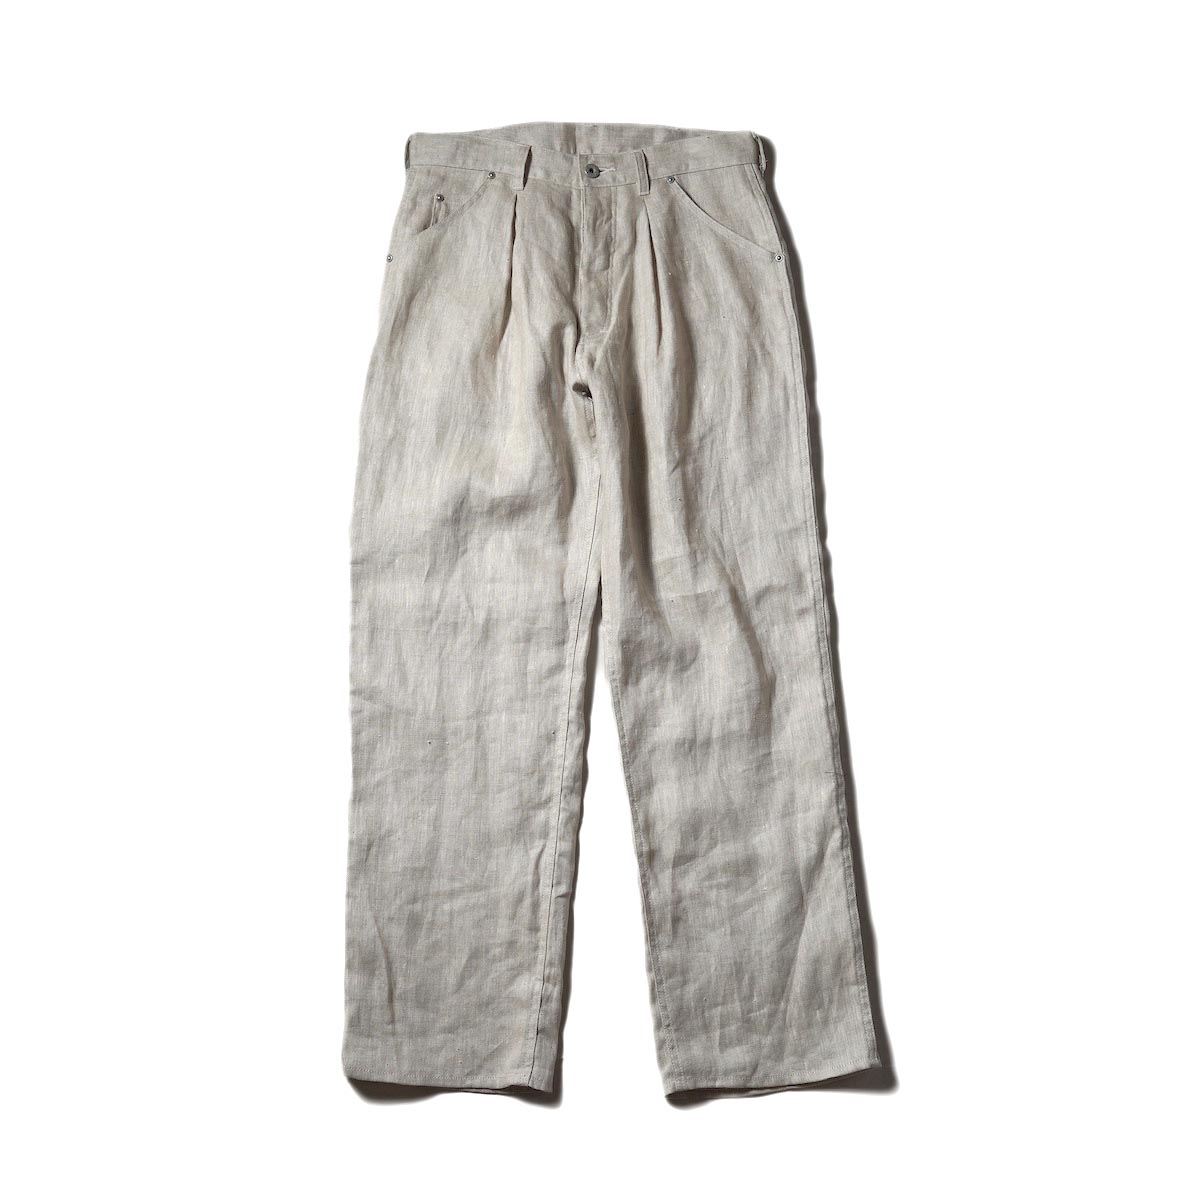 Willow Pants / P-010 - Dead Stock Linen Painter Pants (Natural)